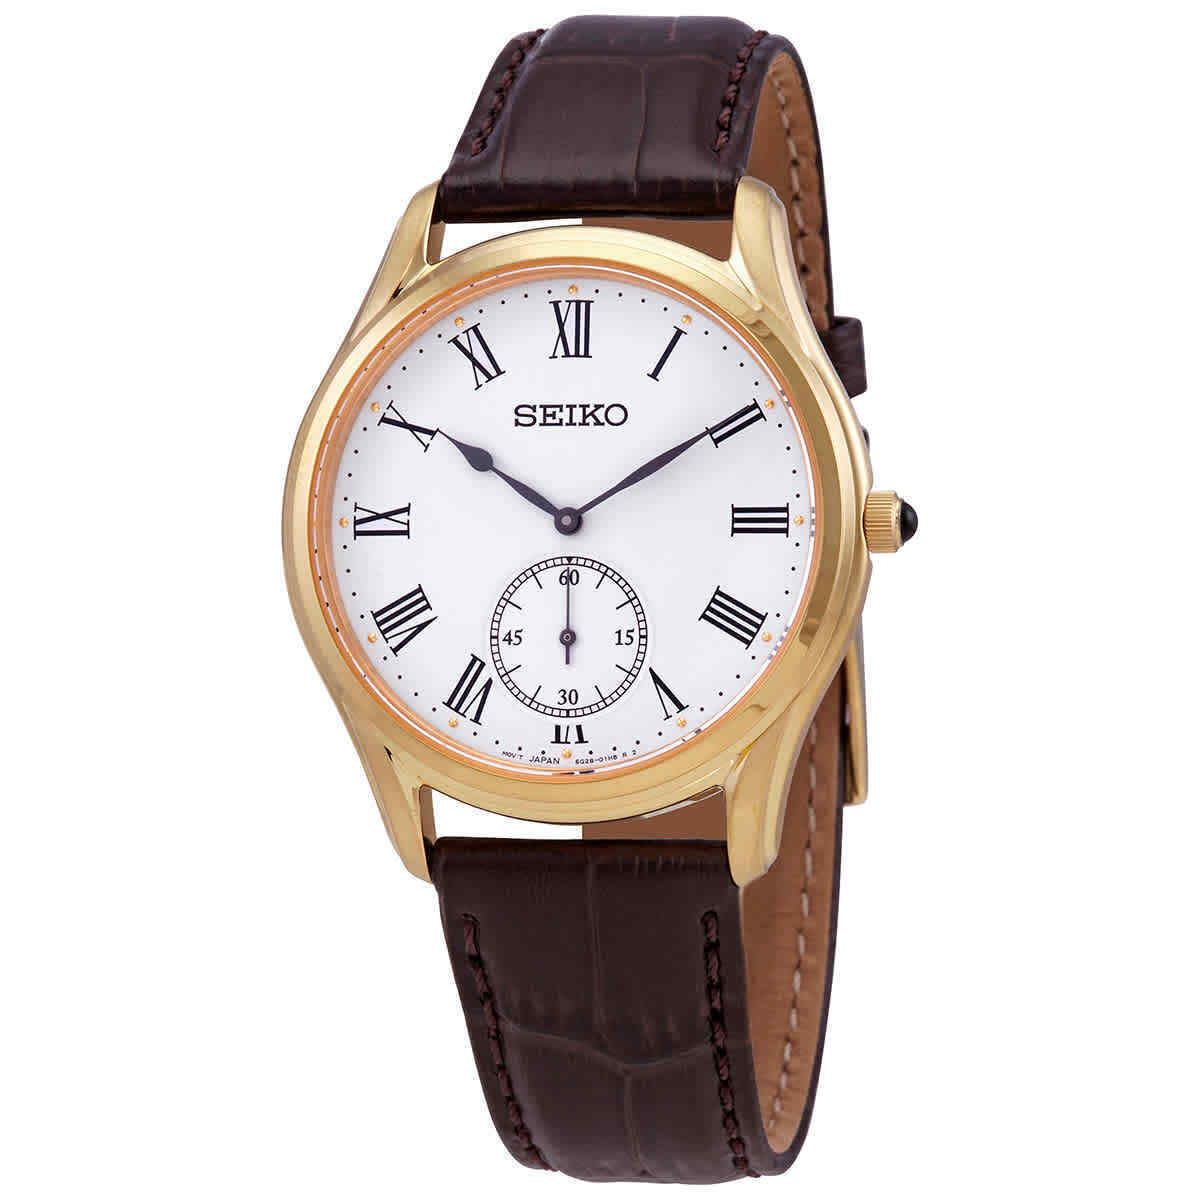 SEIKO Analog Quartz White Dial Brown Leather Watch (SRK050P1)